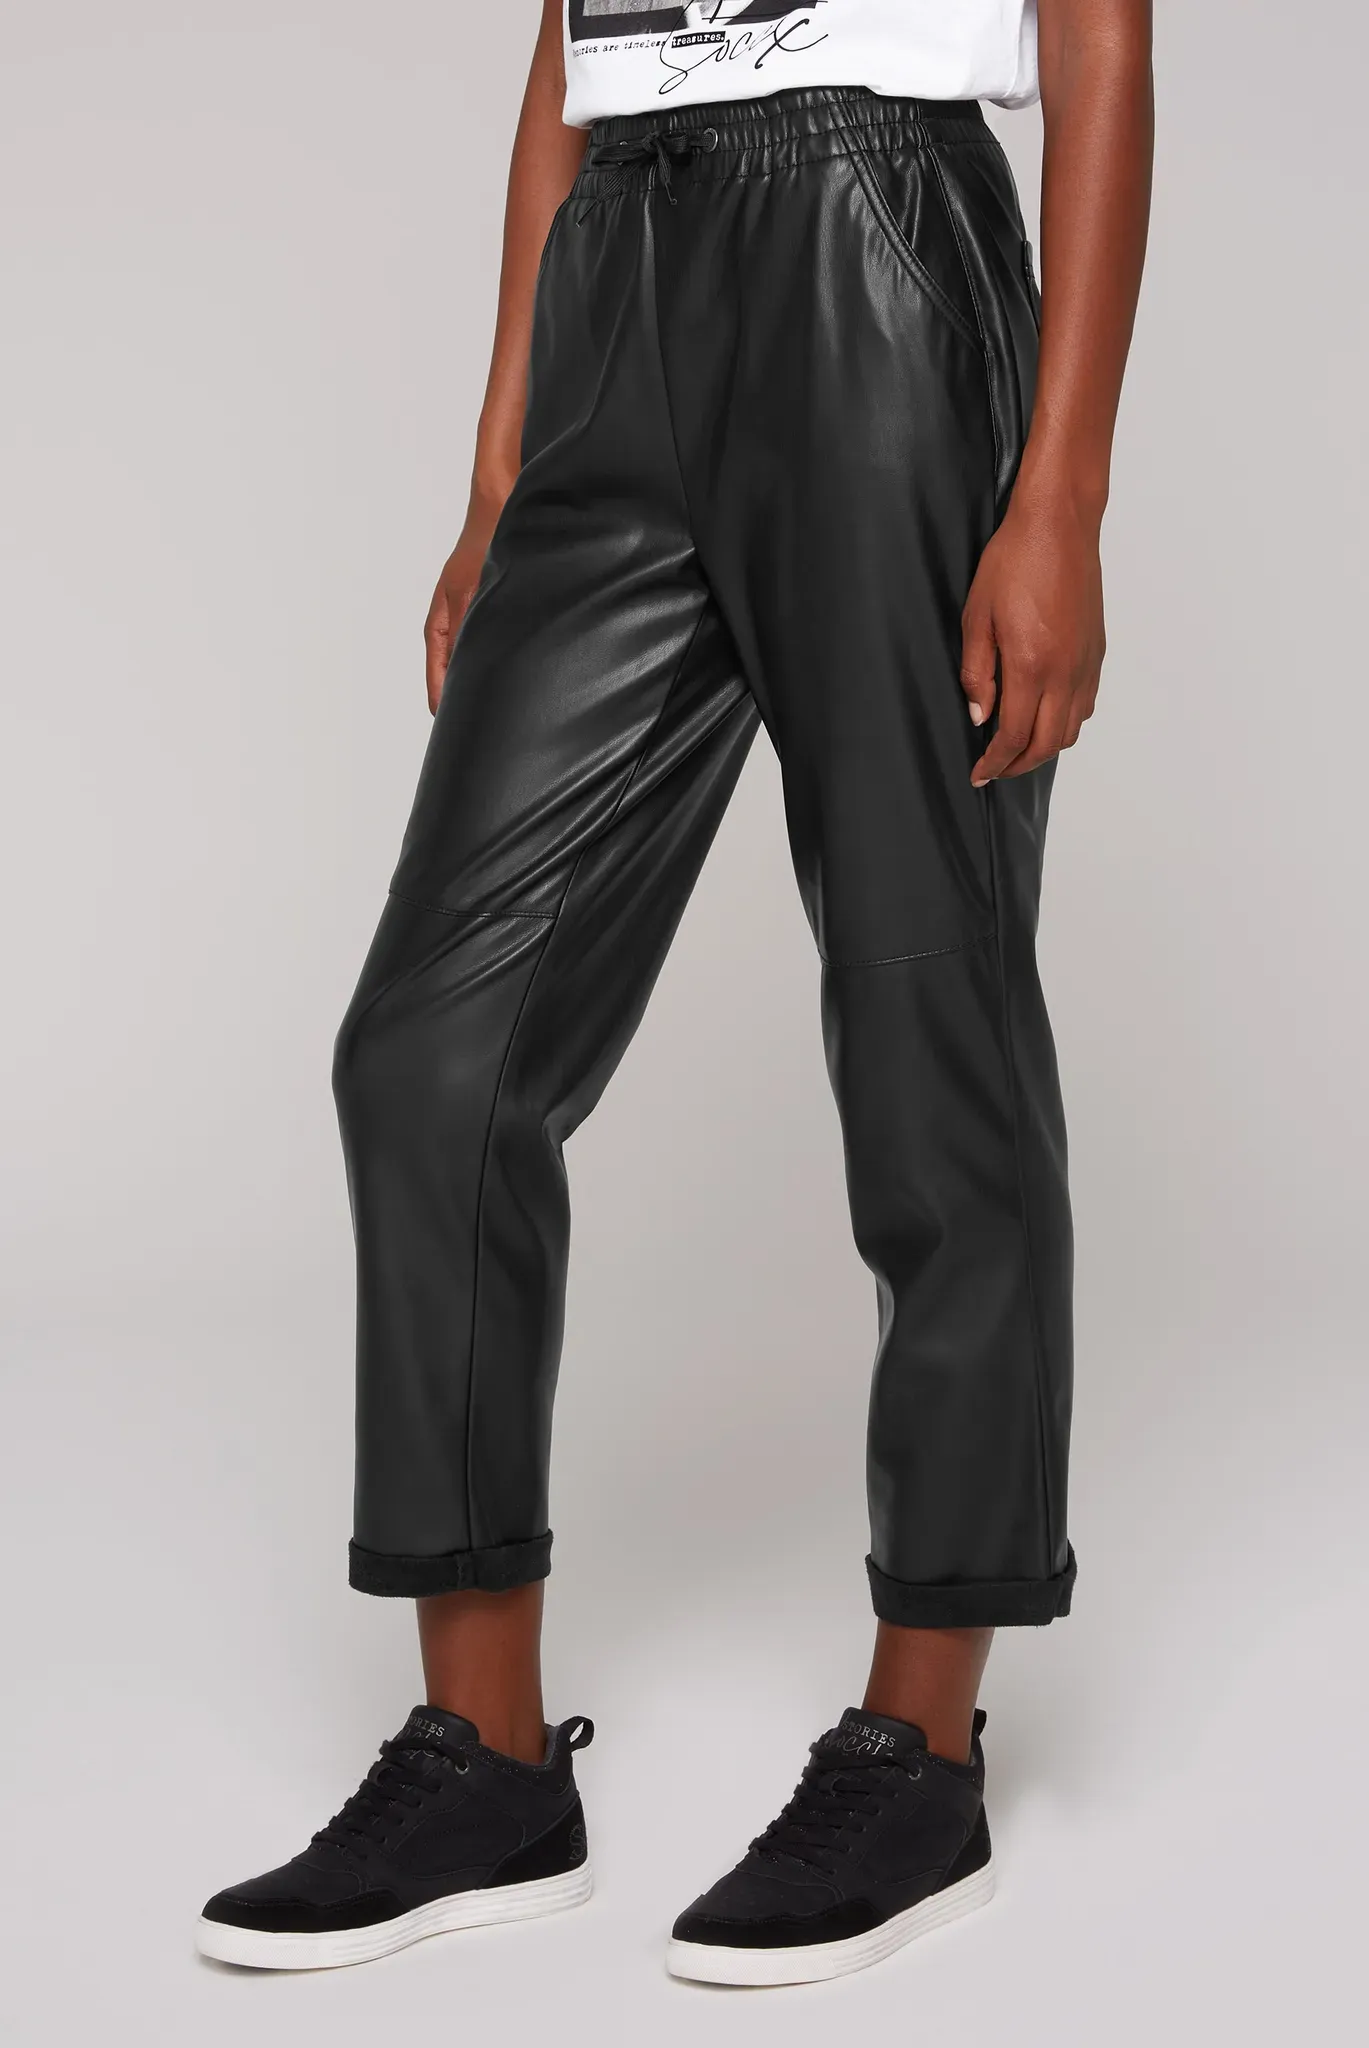 Lederimitathose SOCCX Gr. S, Normalgrößen, schwarz Damen Hosen Kunstlederhosen mit Gesäßtaschen